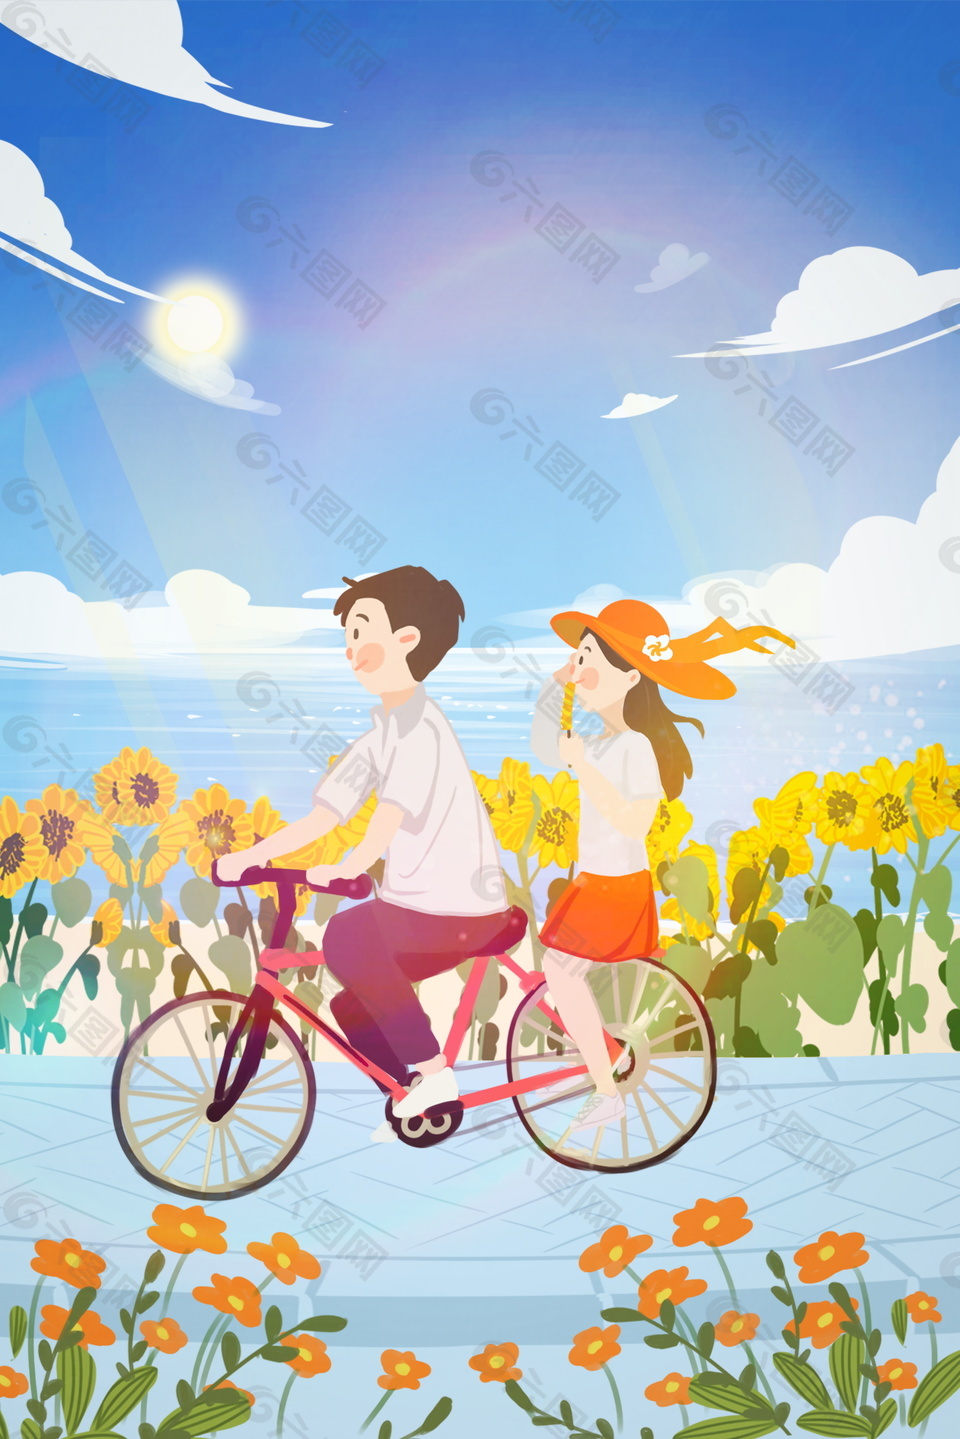 骑车出游海边的向日葵夏季背景素材